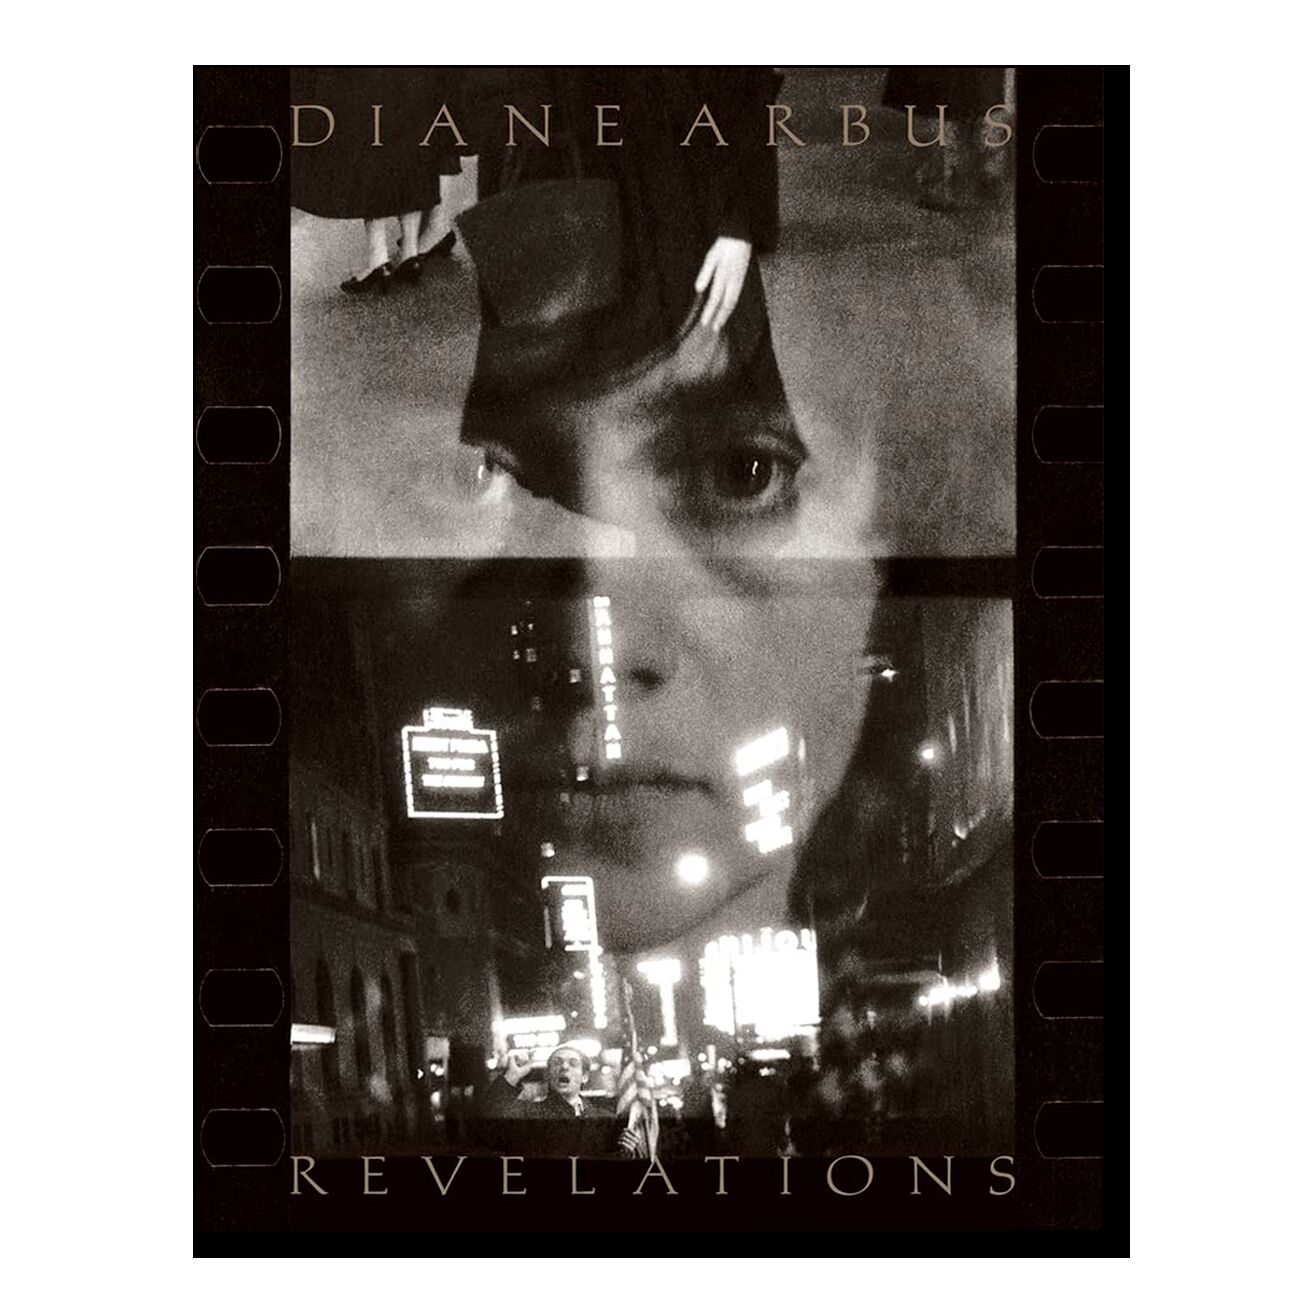 Diane Arbus Revelations